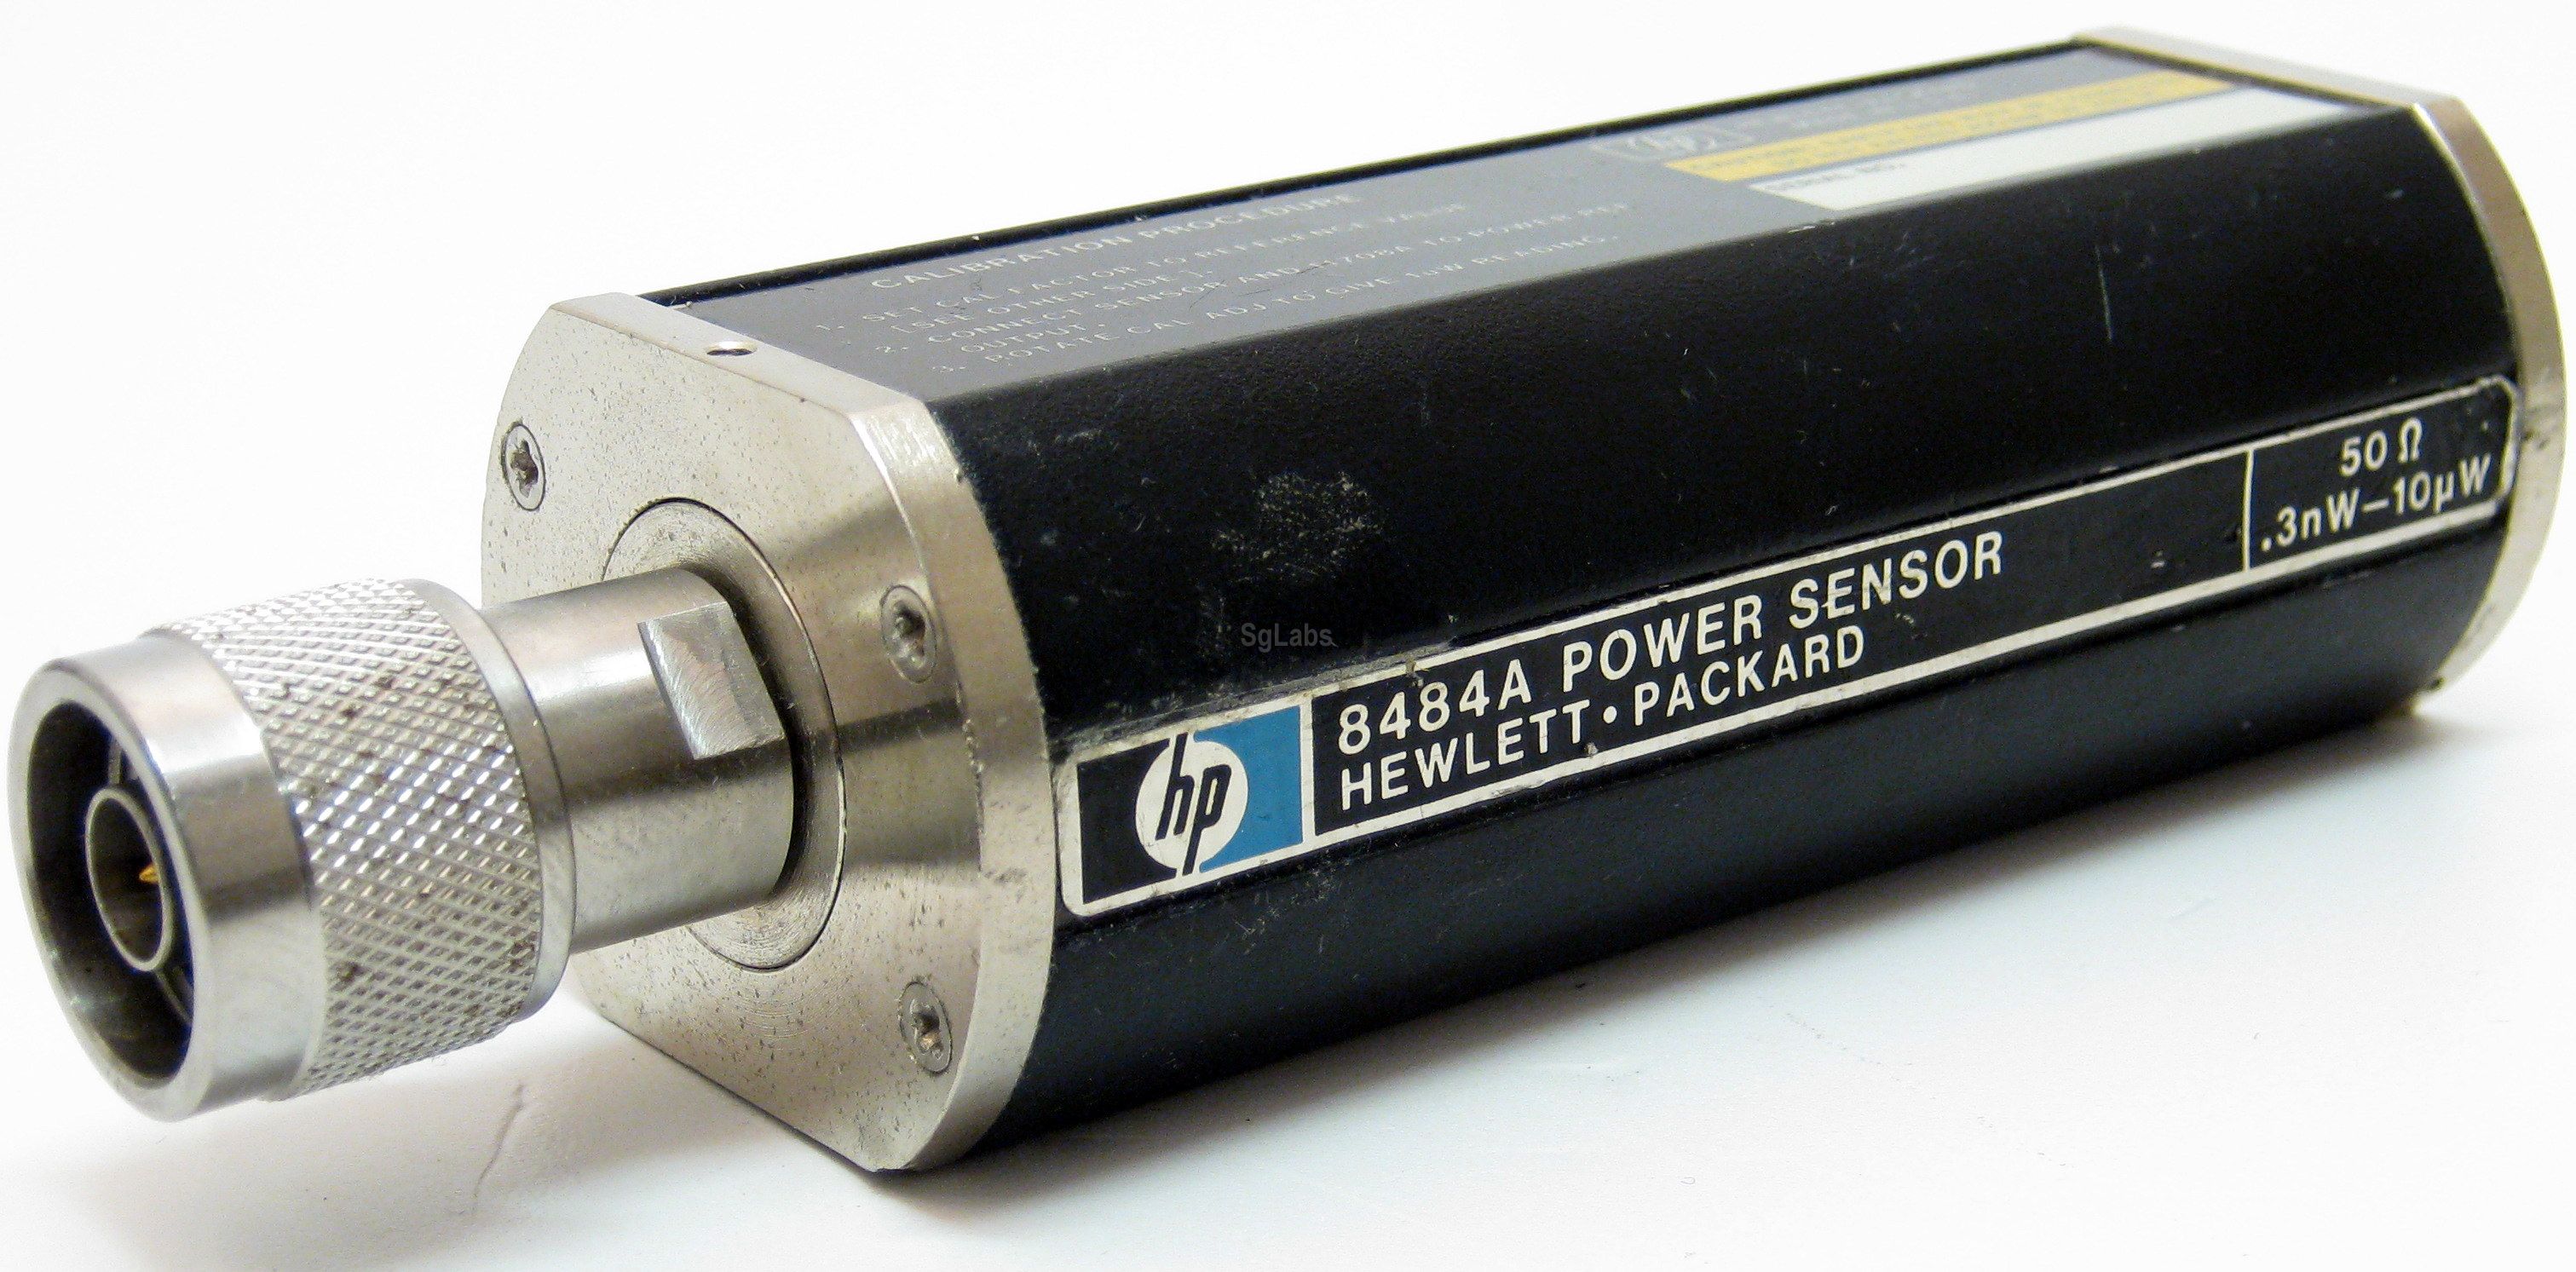 Used 8484A HP Power Sensor 50ohm 10MHz-18GHz 0.3nw-10µw 